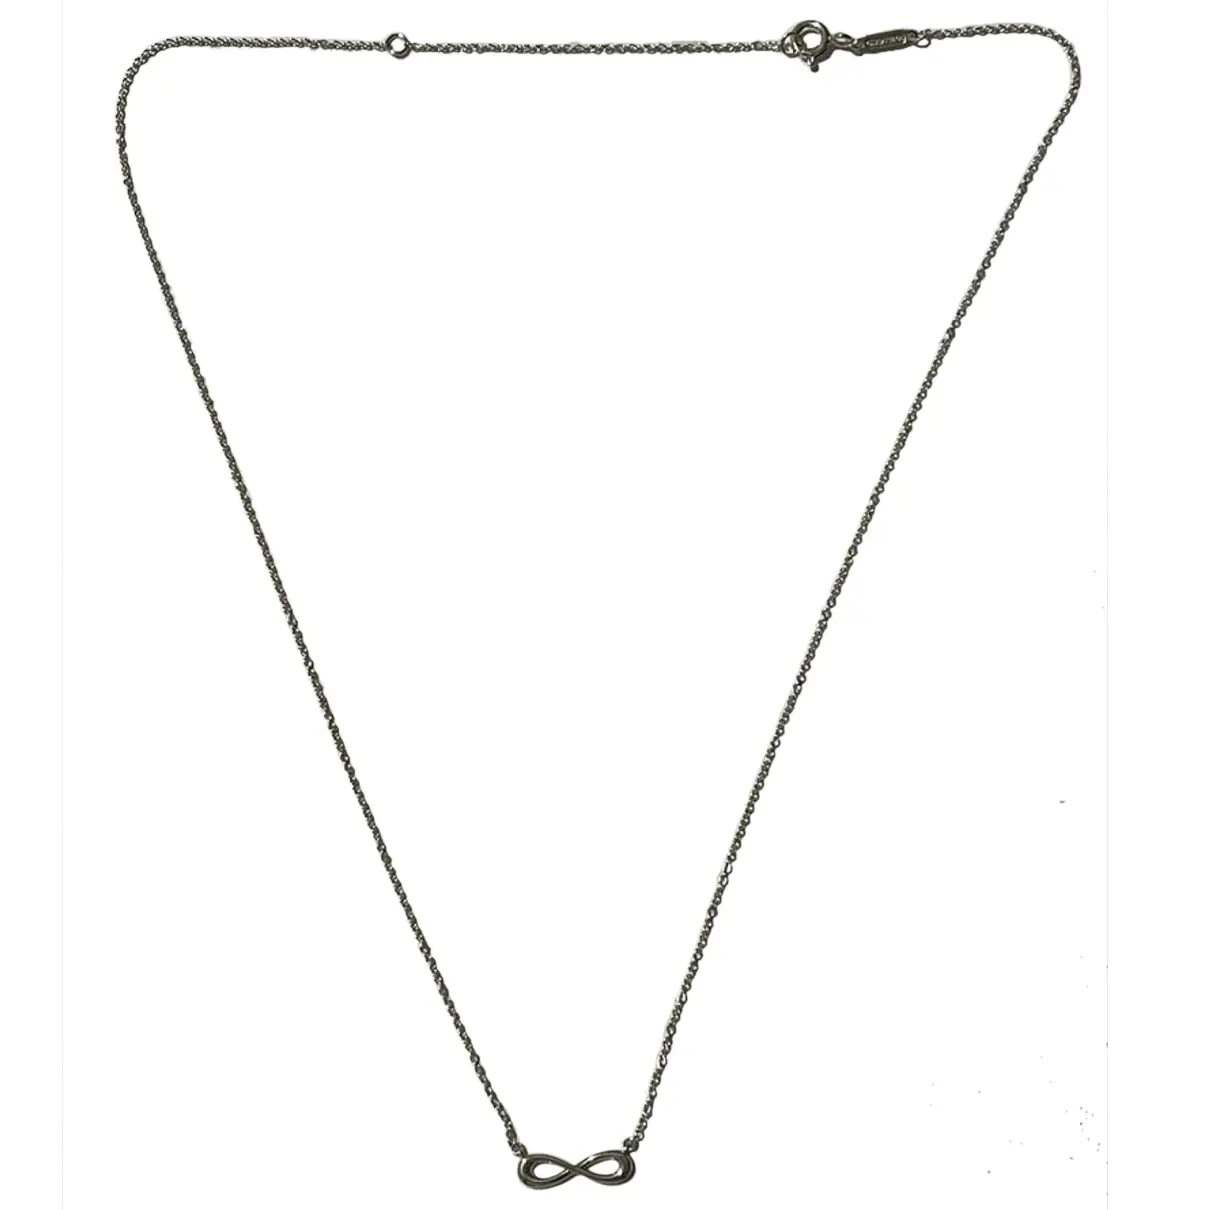 Tiffany Infinity silver necklace Tiffany & Co